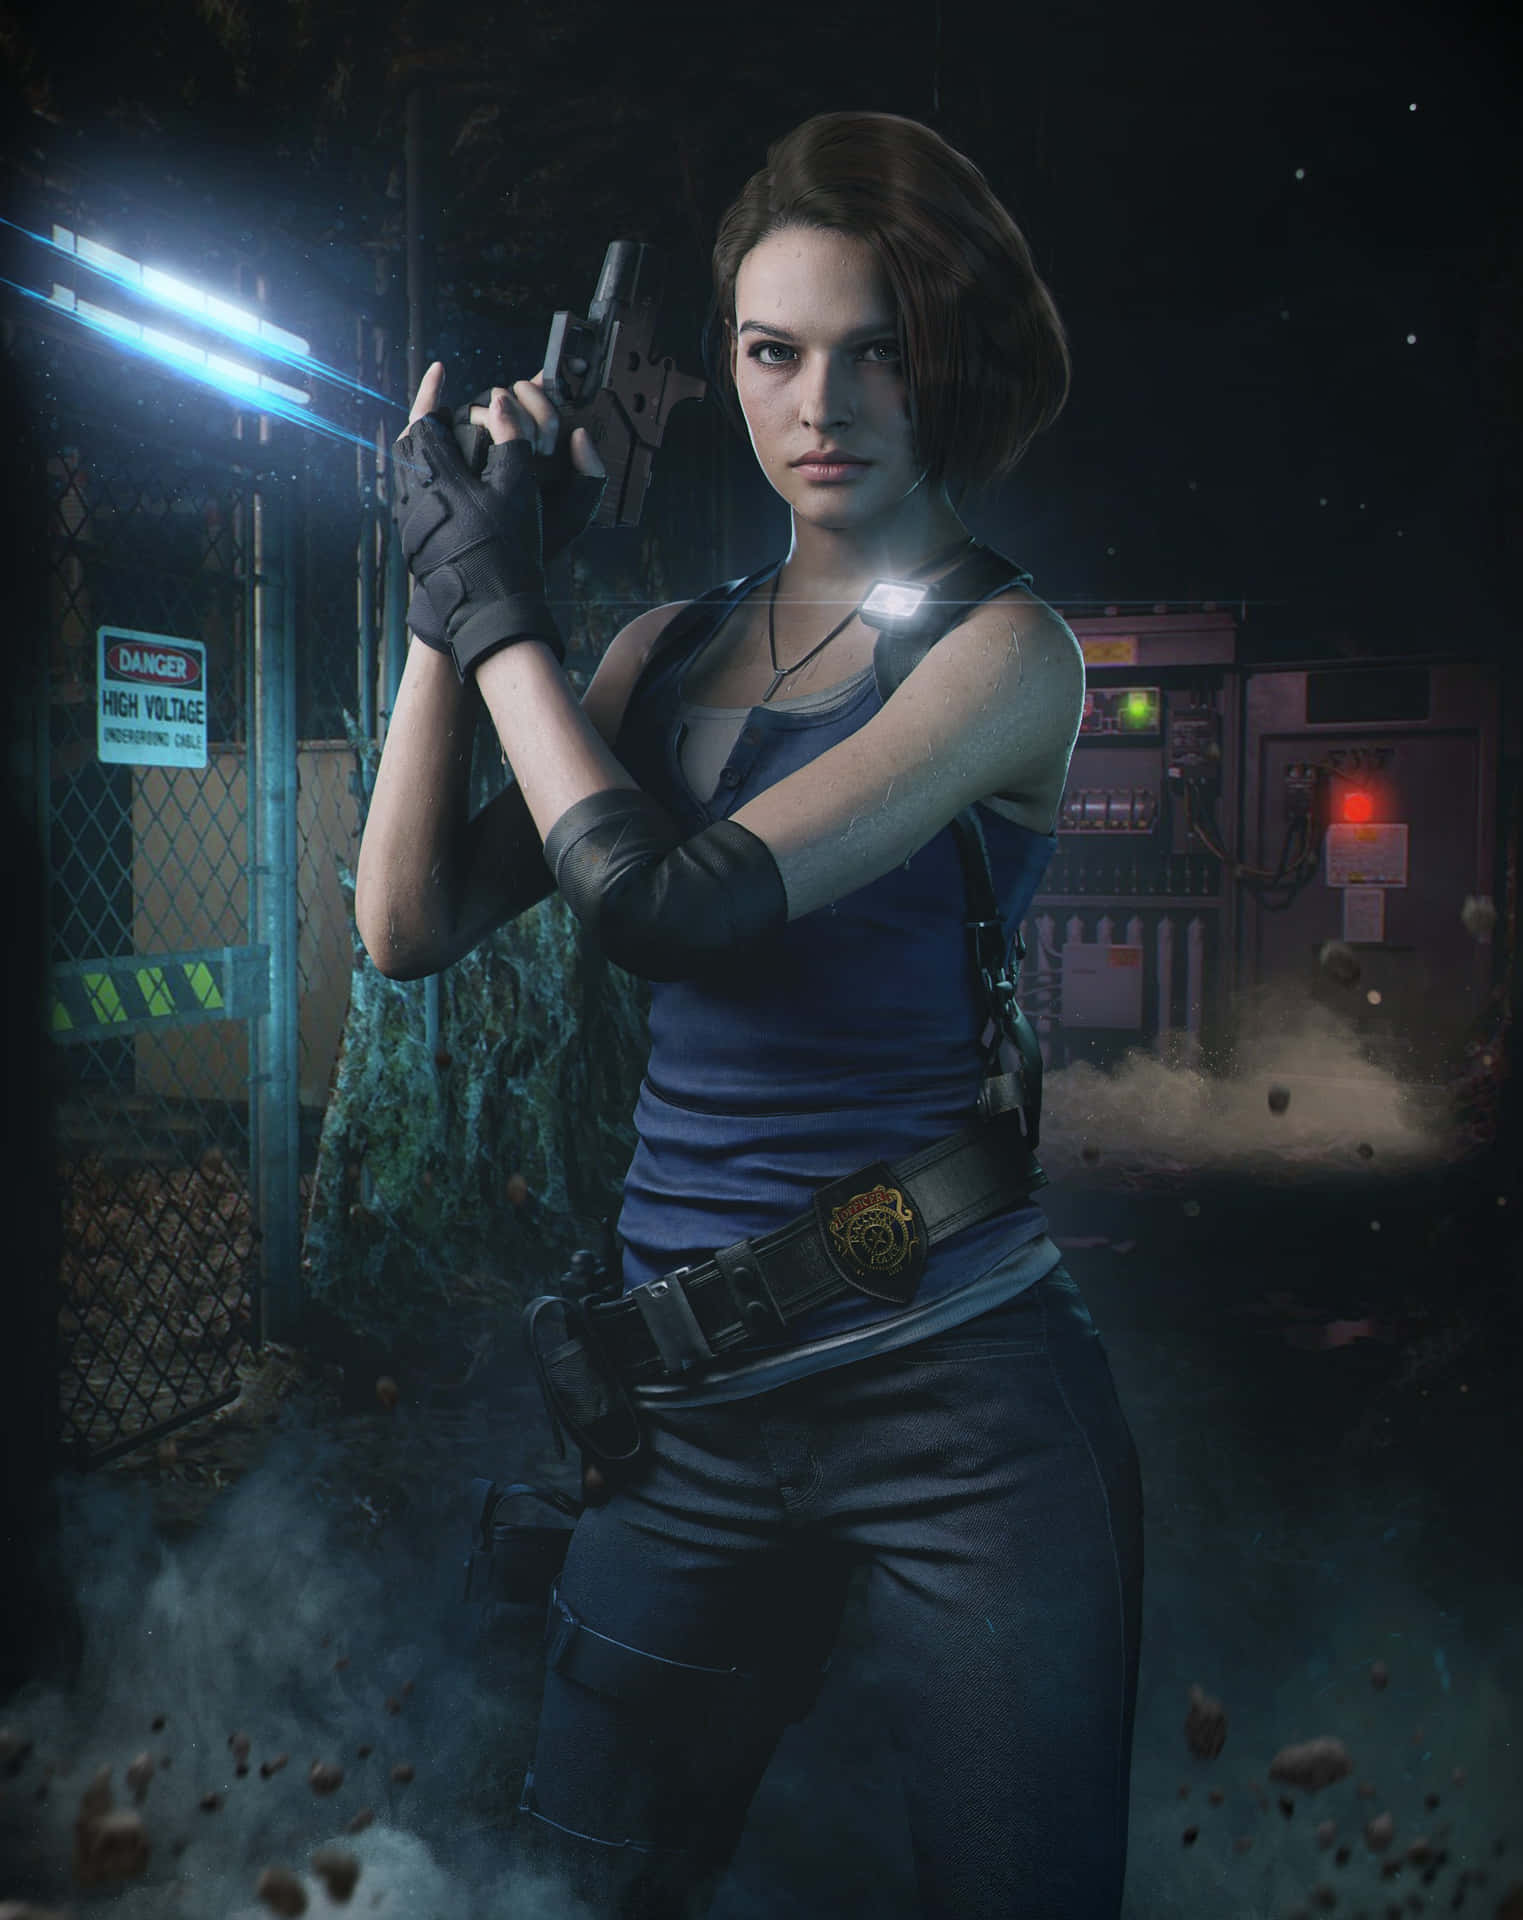 Jill Valentine From Resident Evil Bravely Prepared For Combat. Wallpaper